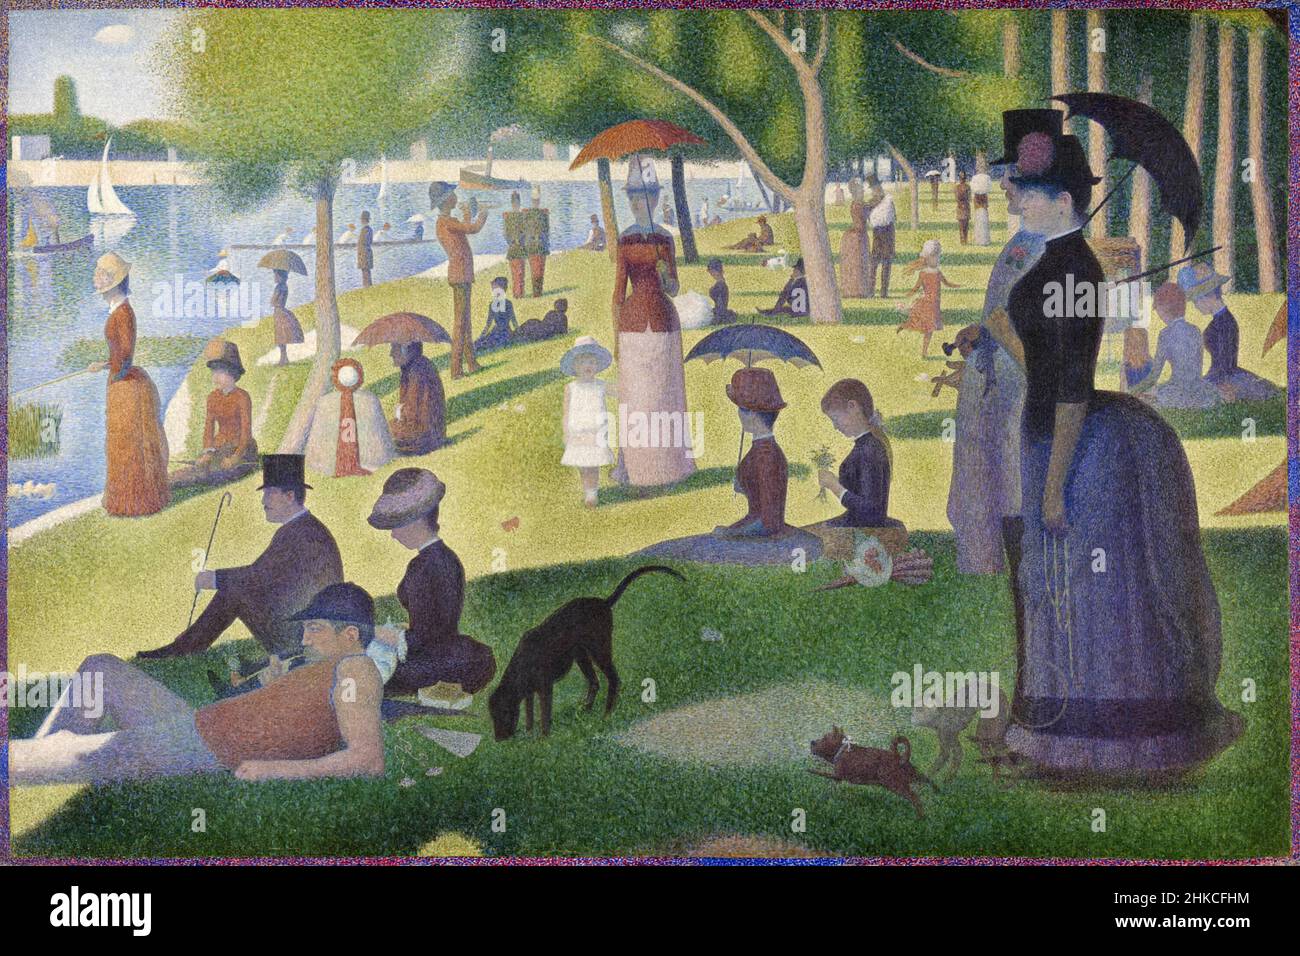 Ein Sonntagnachmittag auf der Insel La Grande Jatte [UN dimanche après-Midi à l'Île de la Grande Jatte] von Georges Seurat (1859-1891) malte 1884-86 mit seiner pointillistischen oder neoimpressionistischen Technik. Stockfoto